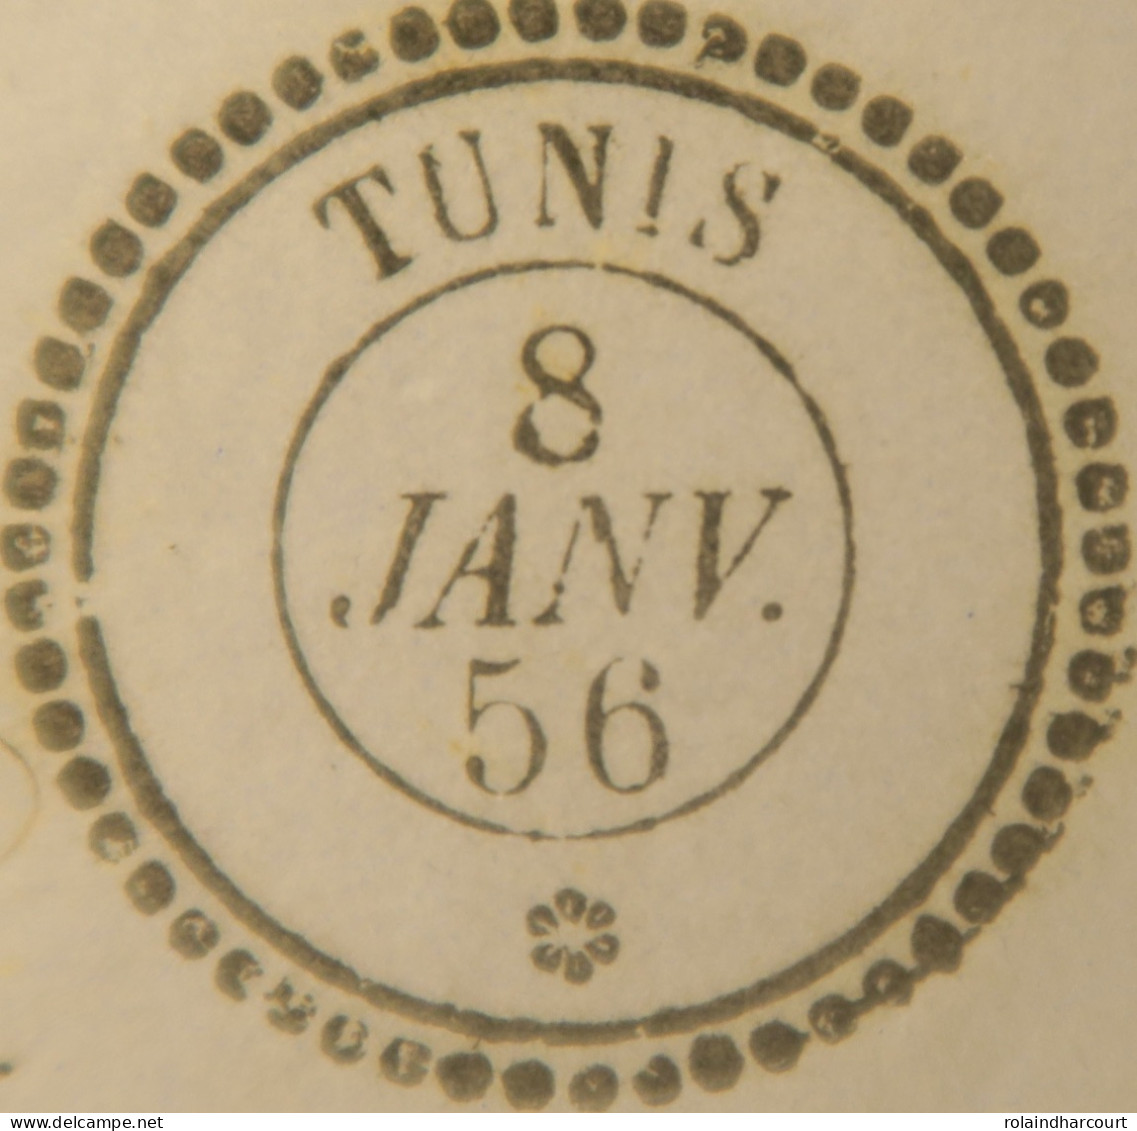 A550 - POSTE MARITIME - LETTRE (LAC) TUNIS (TUNISIE) 8 JANVIER 1856 à MARSEILLE (via BÔNE) - Maritieme Post